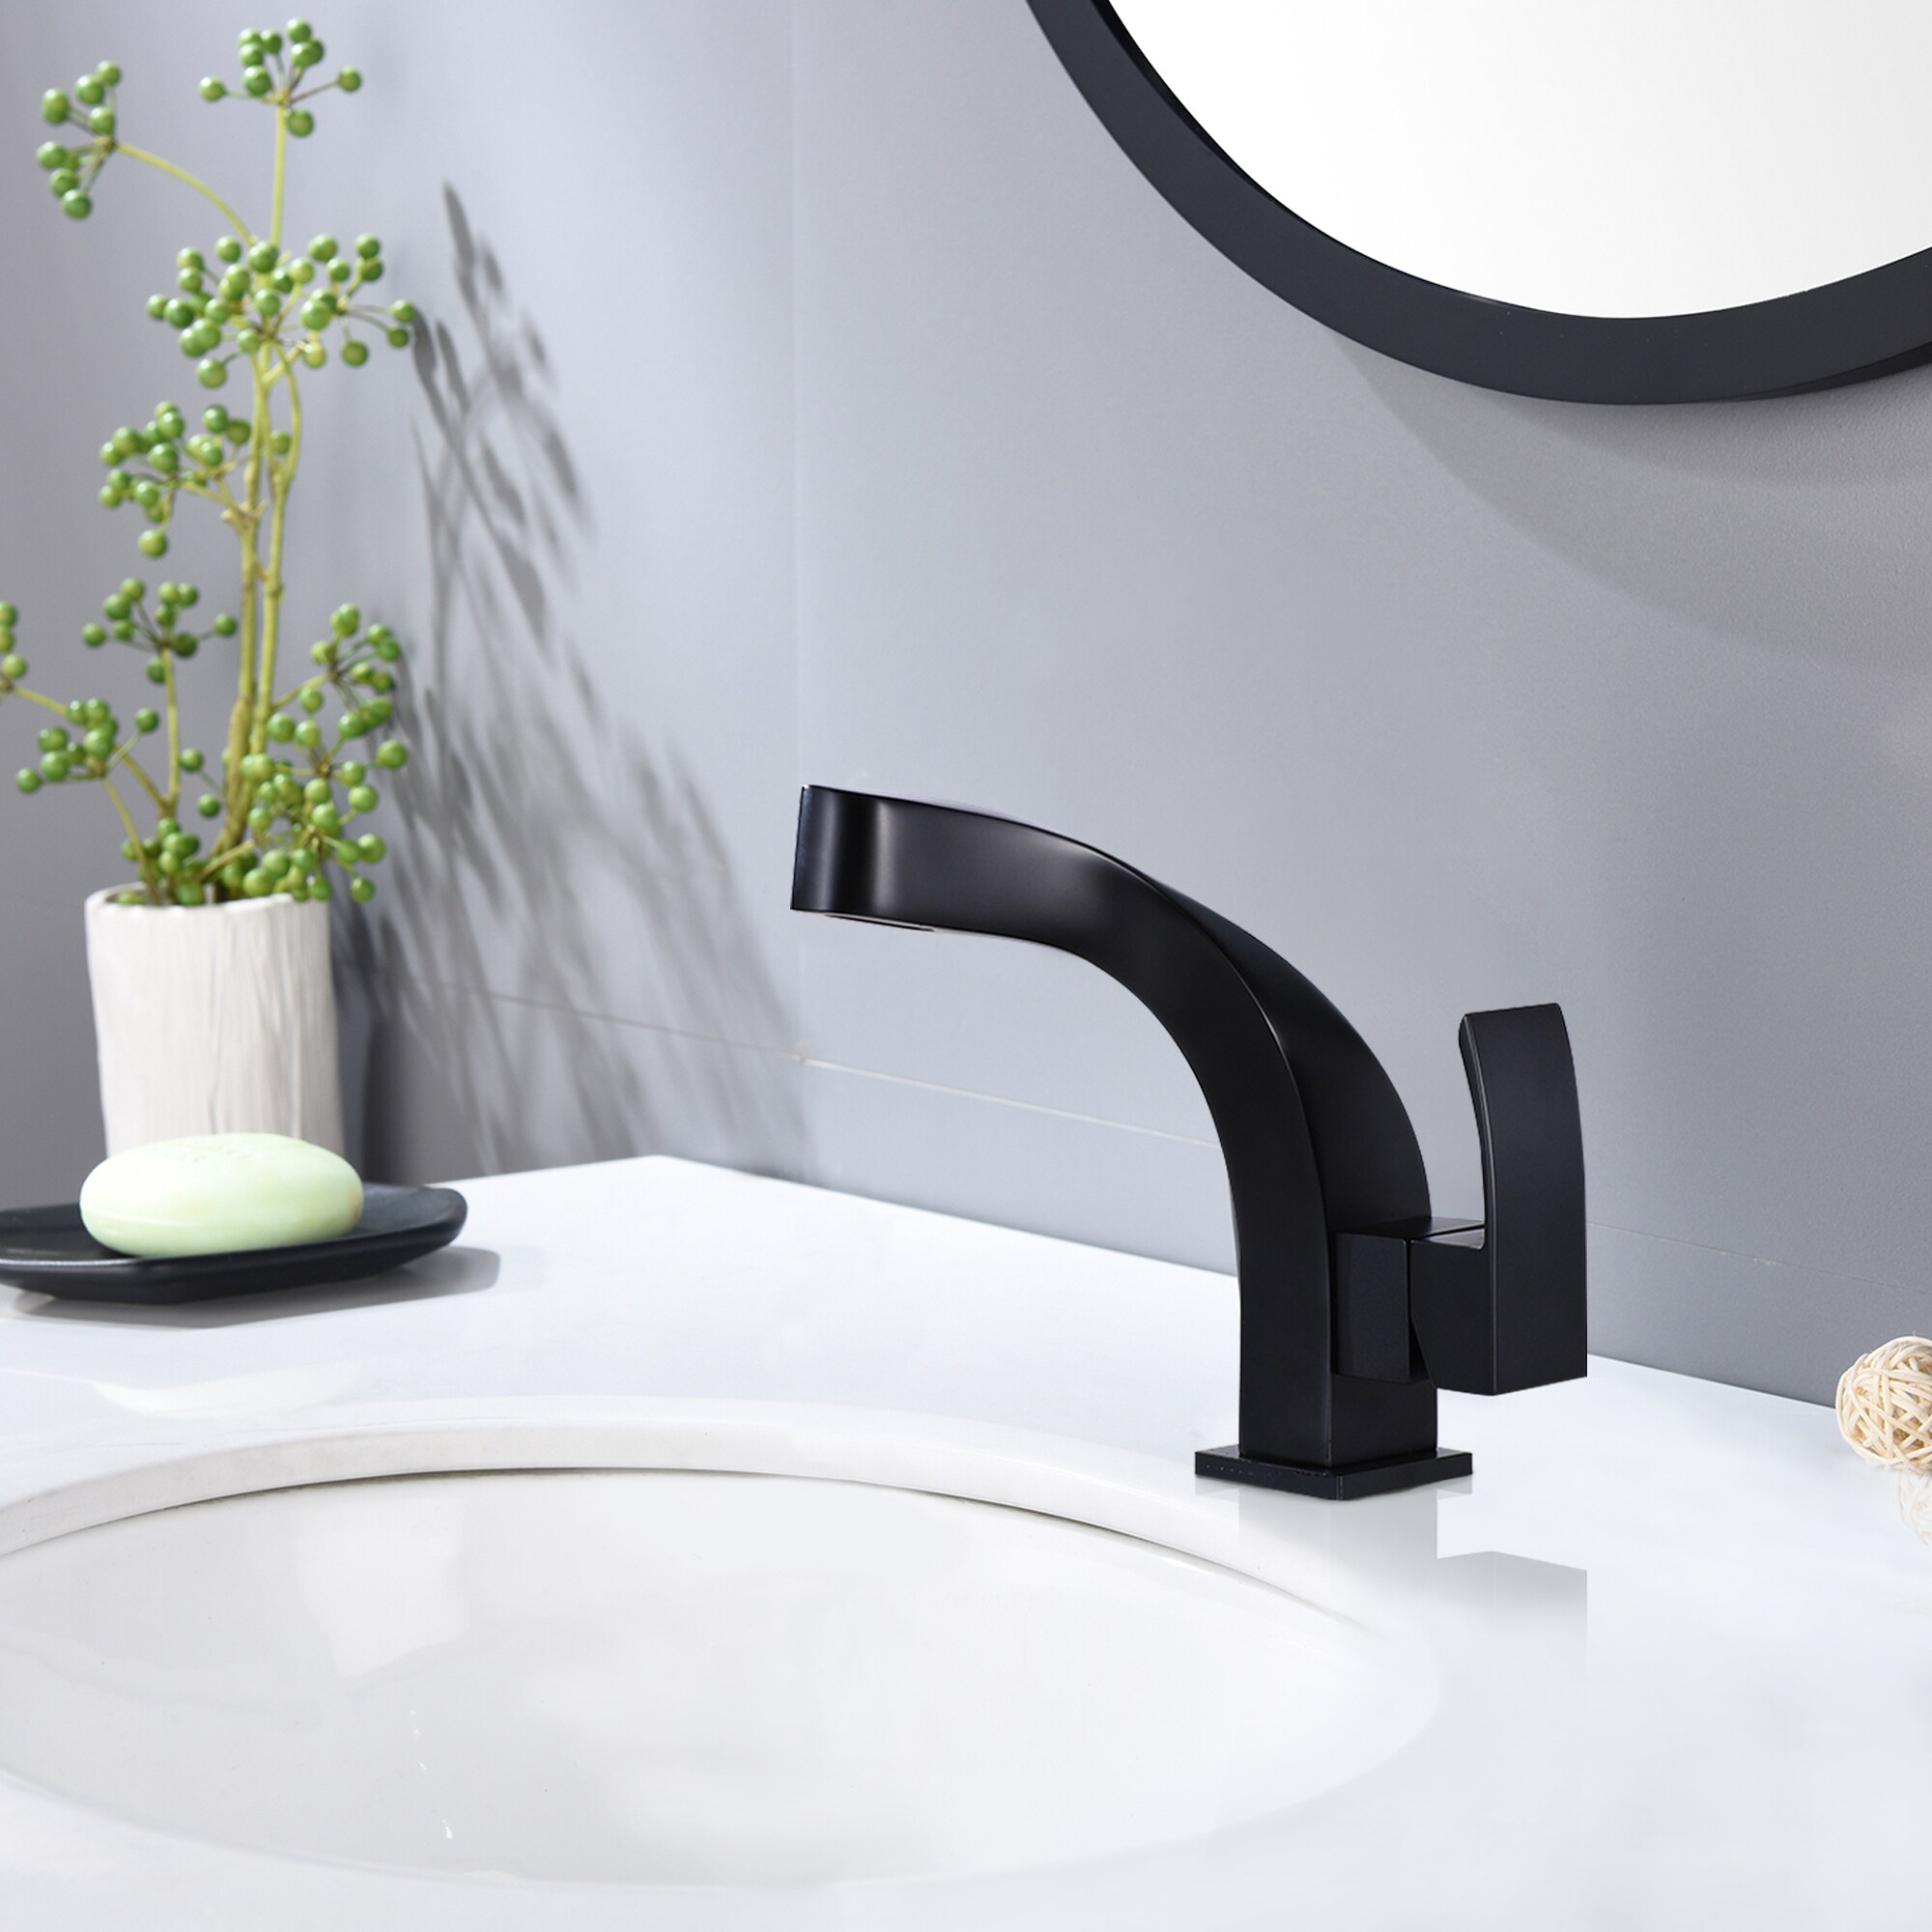 WELLFOR Deck mount bath faucet Matte Black 1-handle Single Hole Low-arc Bathroom Sink Faucet